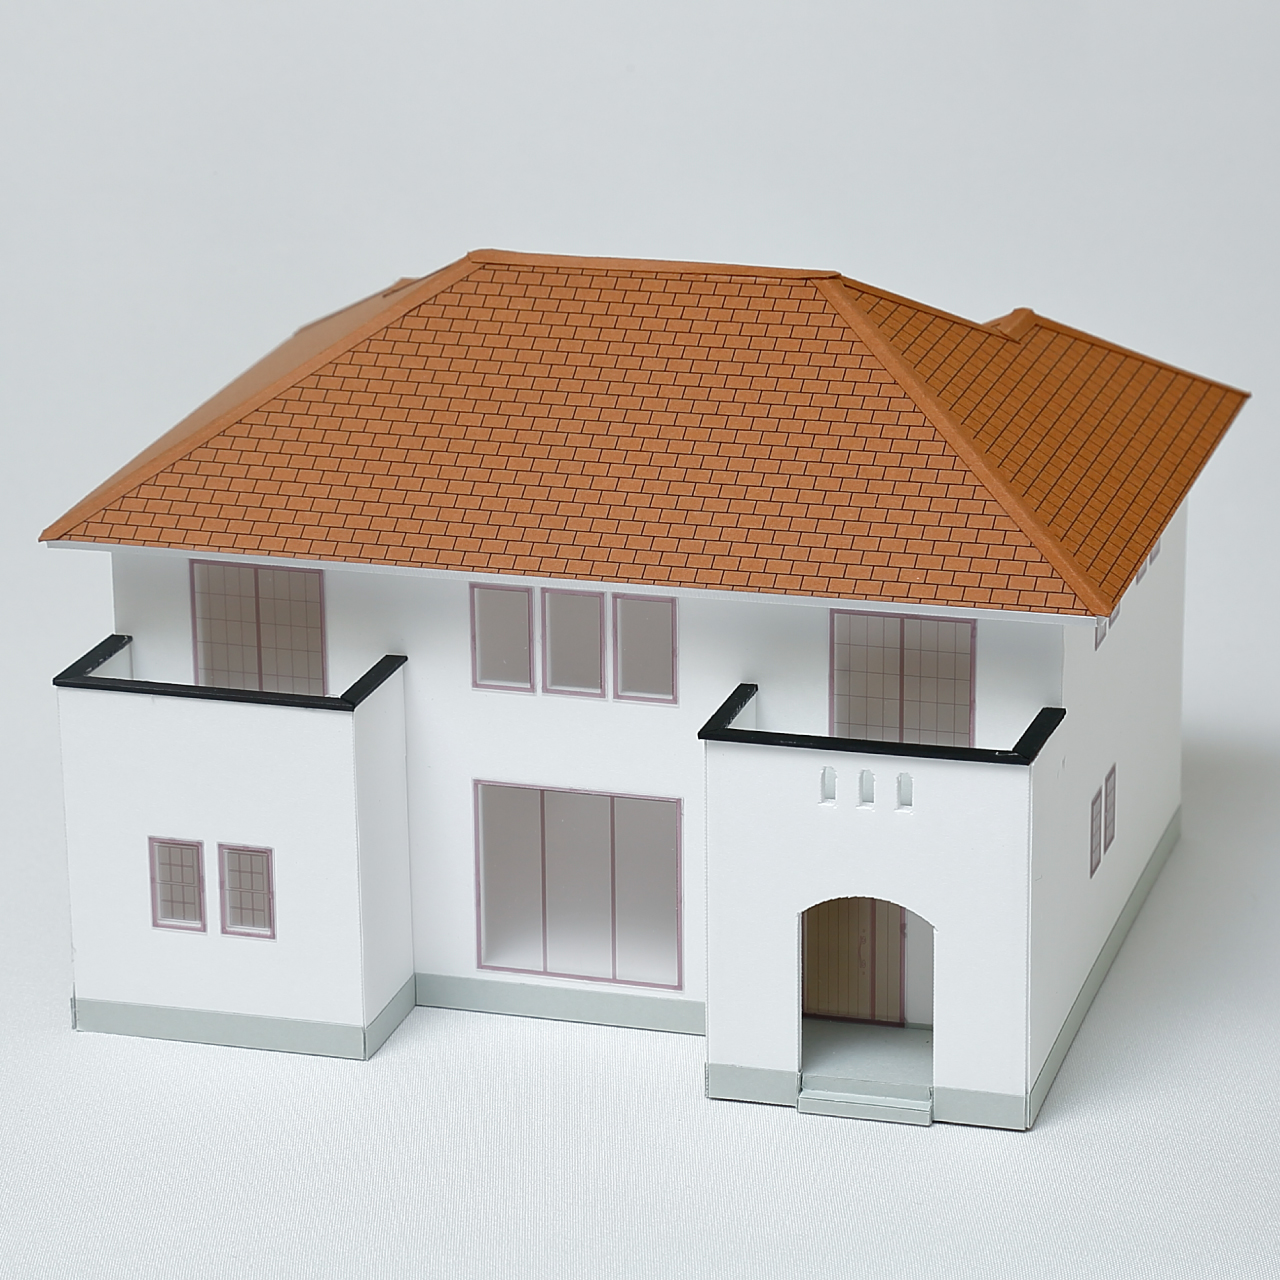 住宅模型キット「dekita」特設サイト | 短時間・低料金で作れる 完全 